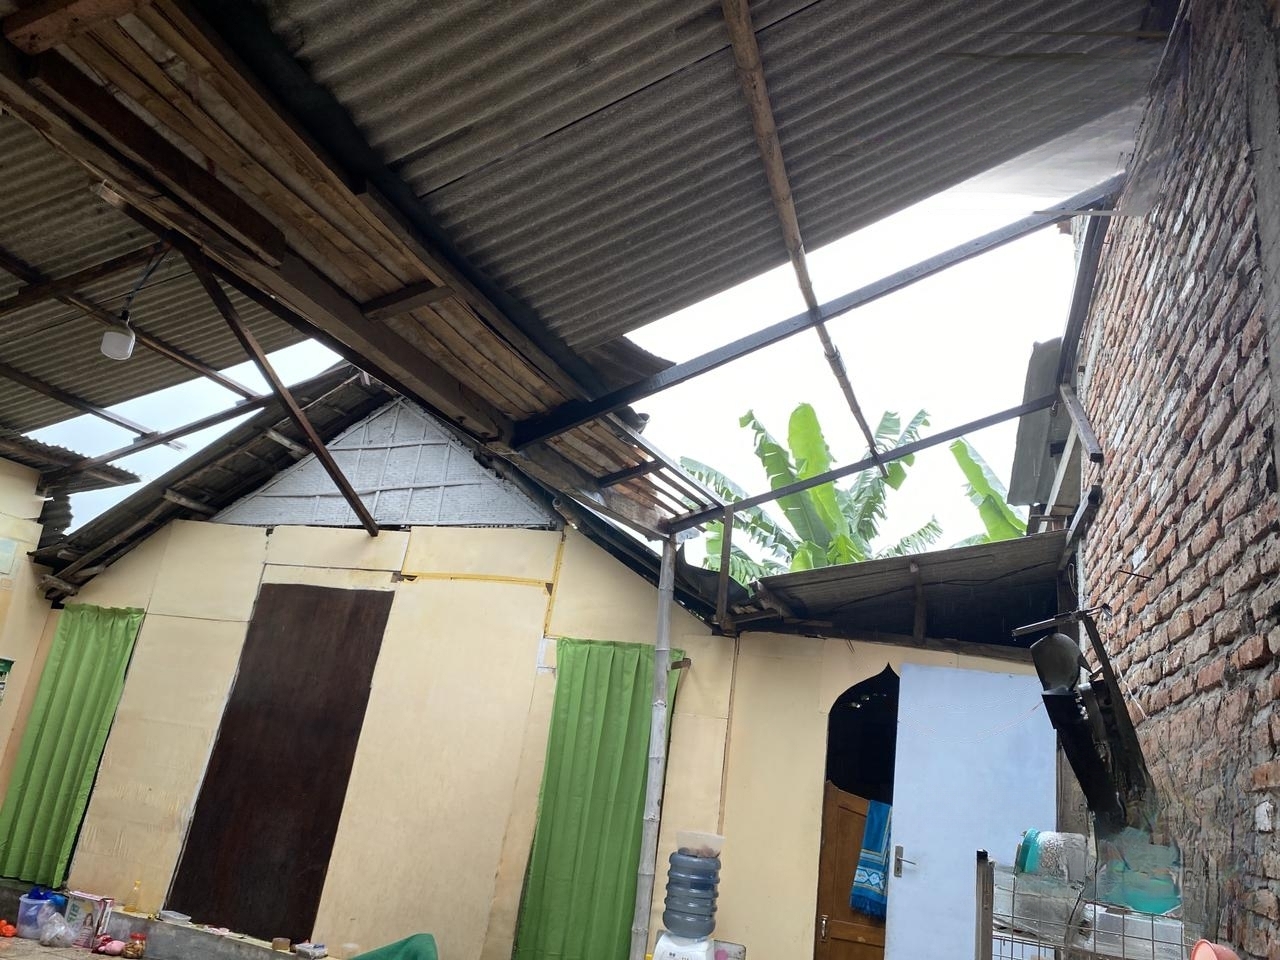 Angin Kencang Sebabkan 4 Rumah Rusak di Sooko Mojokerto